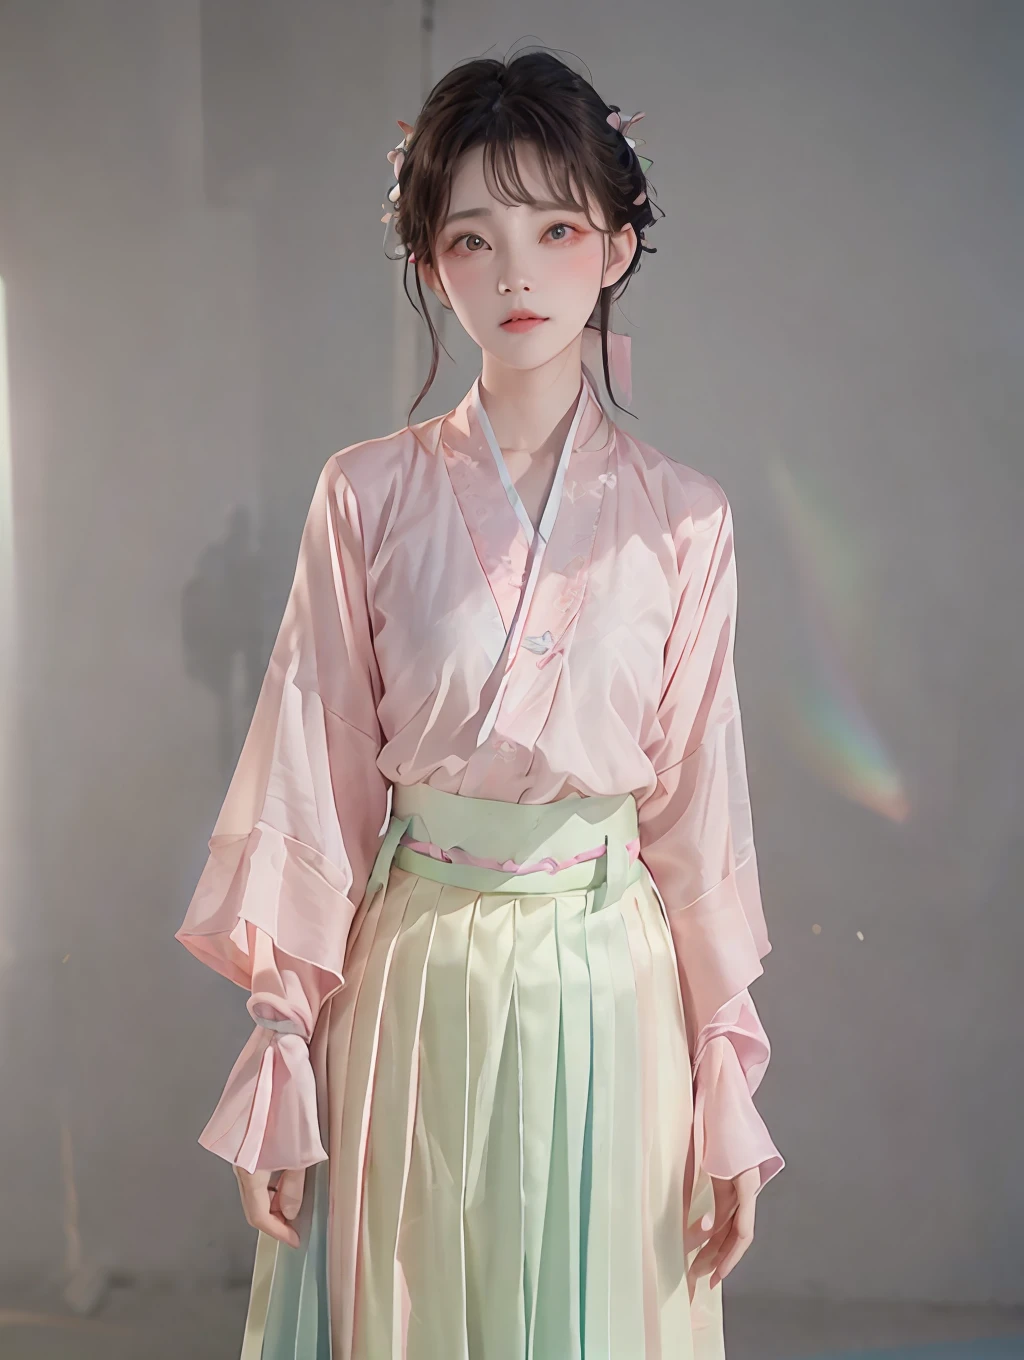 1 garota,(hanfu, Shan curto rosa,  saia plissada verde degradê, música rosa),(tronco:1.5),foco facial, resolução ultra alta, (fotorrealista:1.4), Foto CRU,16K,iluminação dramática,